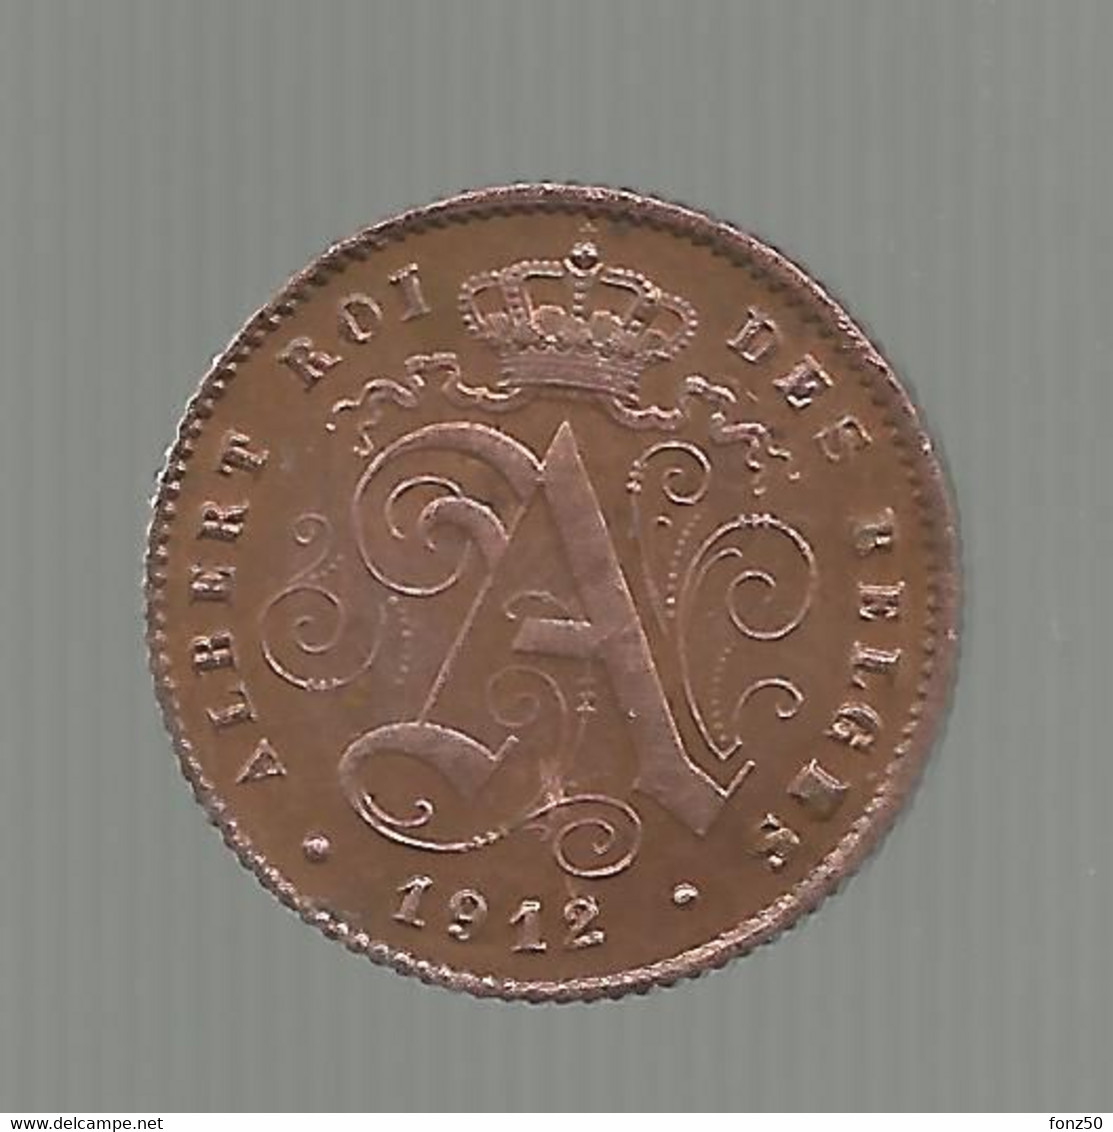 VARIA * DUBBEL DATE * 1 Cent 1912 Frans * F D C * Nr 11367 - 1 Cent